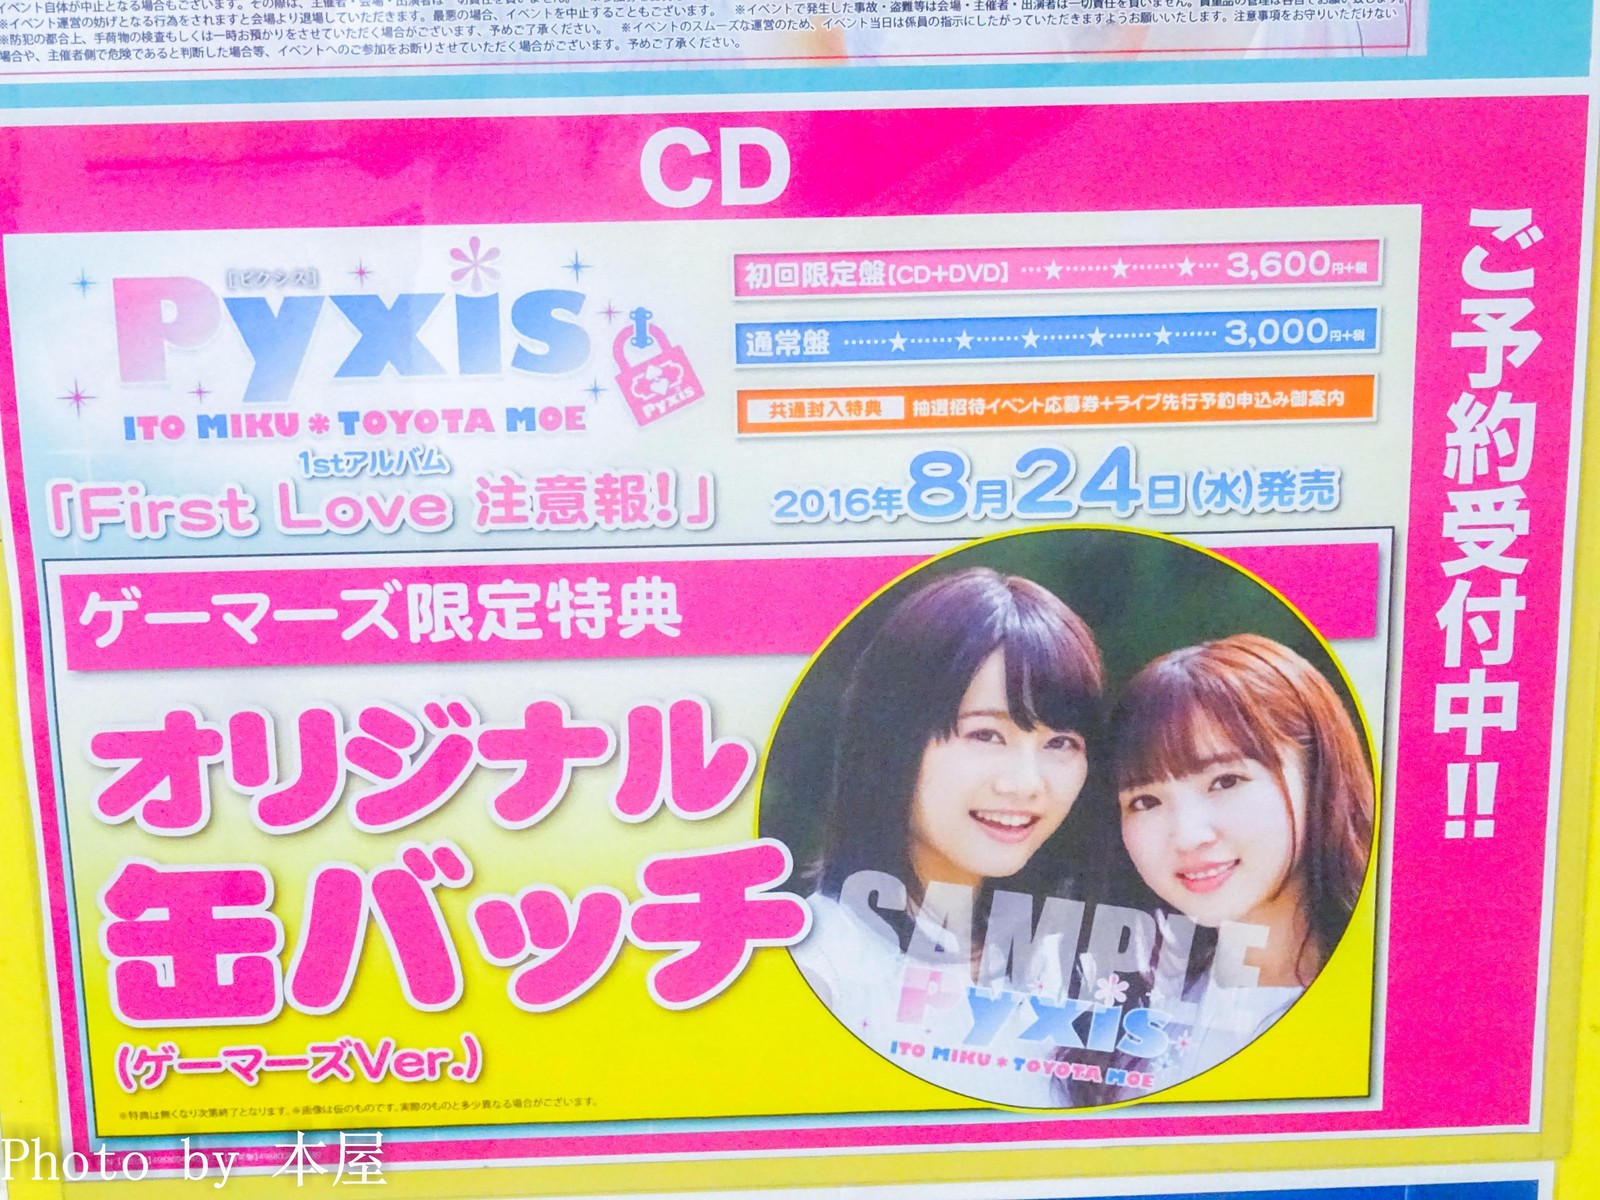 Pyxis 1stアルバム First Love 注意報 の発売を記念した衣装 パネル展が開催 アキバな本屋